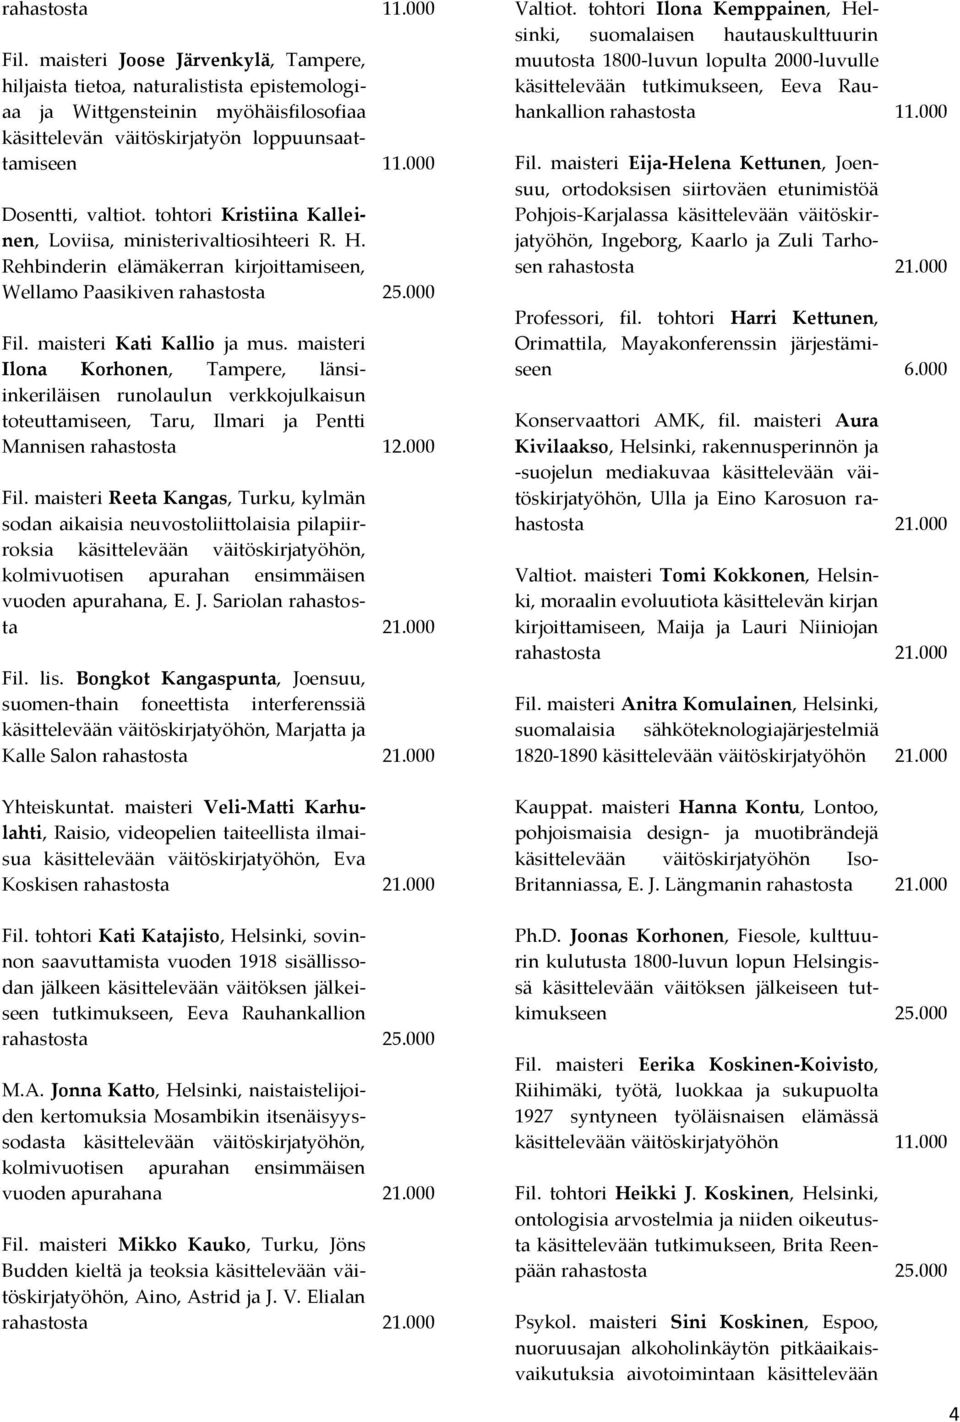 maisteri Kati Kallio ja mus. maisteri Ilona Korhonen, Tampere, länsiinkeriläisen runolaulun verkkojulkaisun toteuttamiseen, Taru, Ilmari ja Pentti Mannisen rahastosta 12.000 Fil.